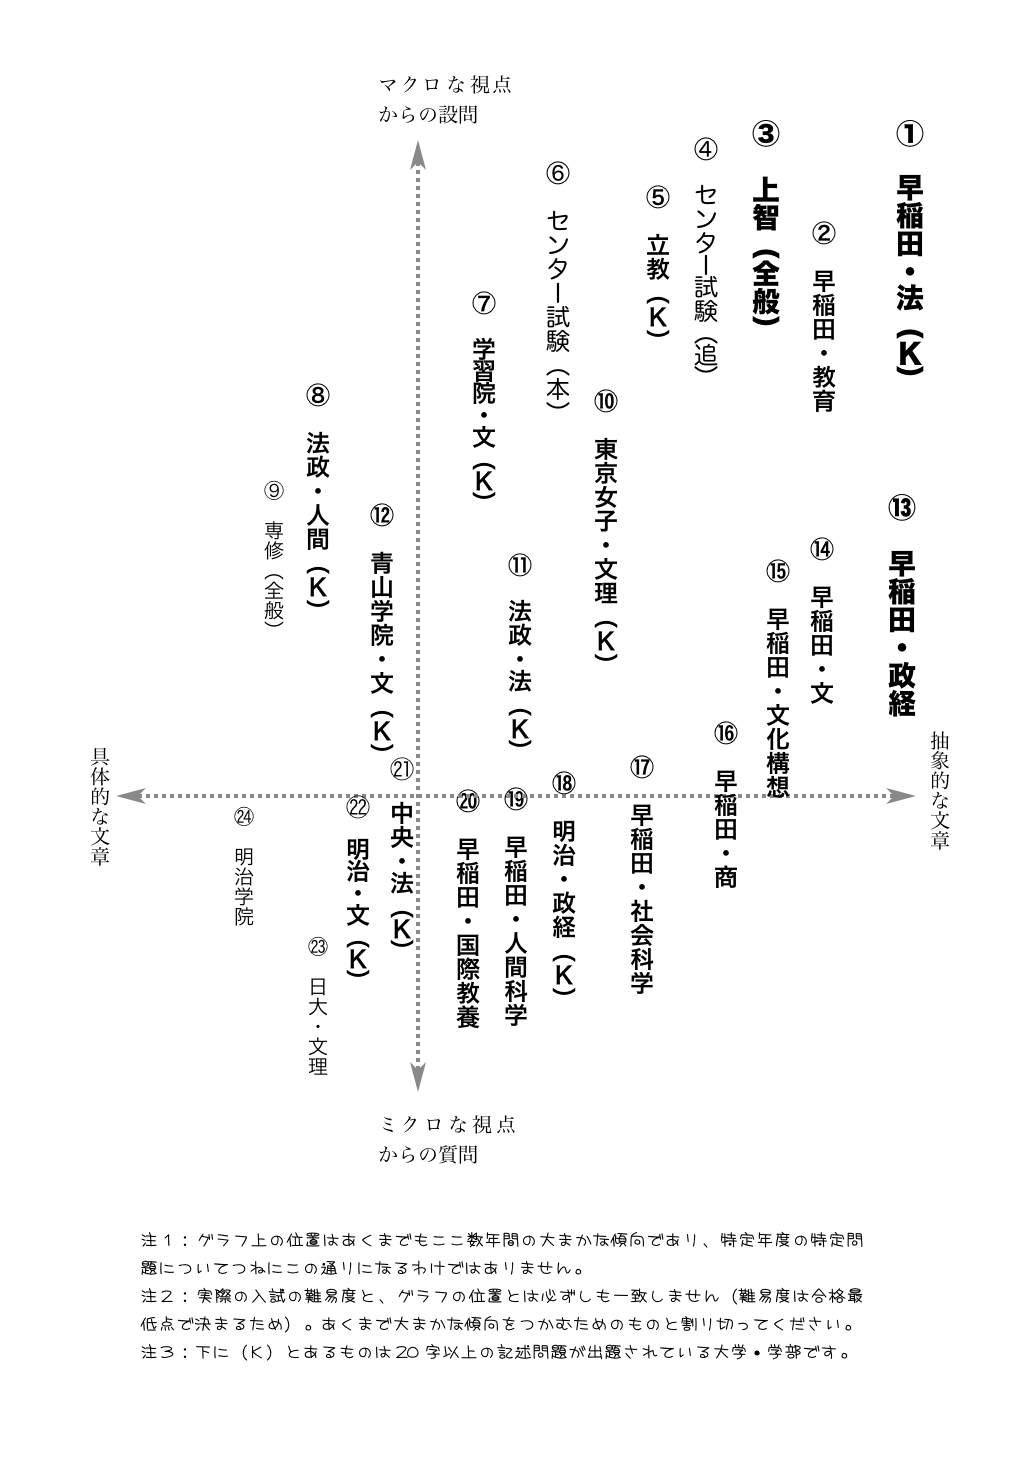 http://genbun.jp/archives/2009/01/11/Graph.jpg